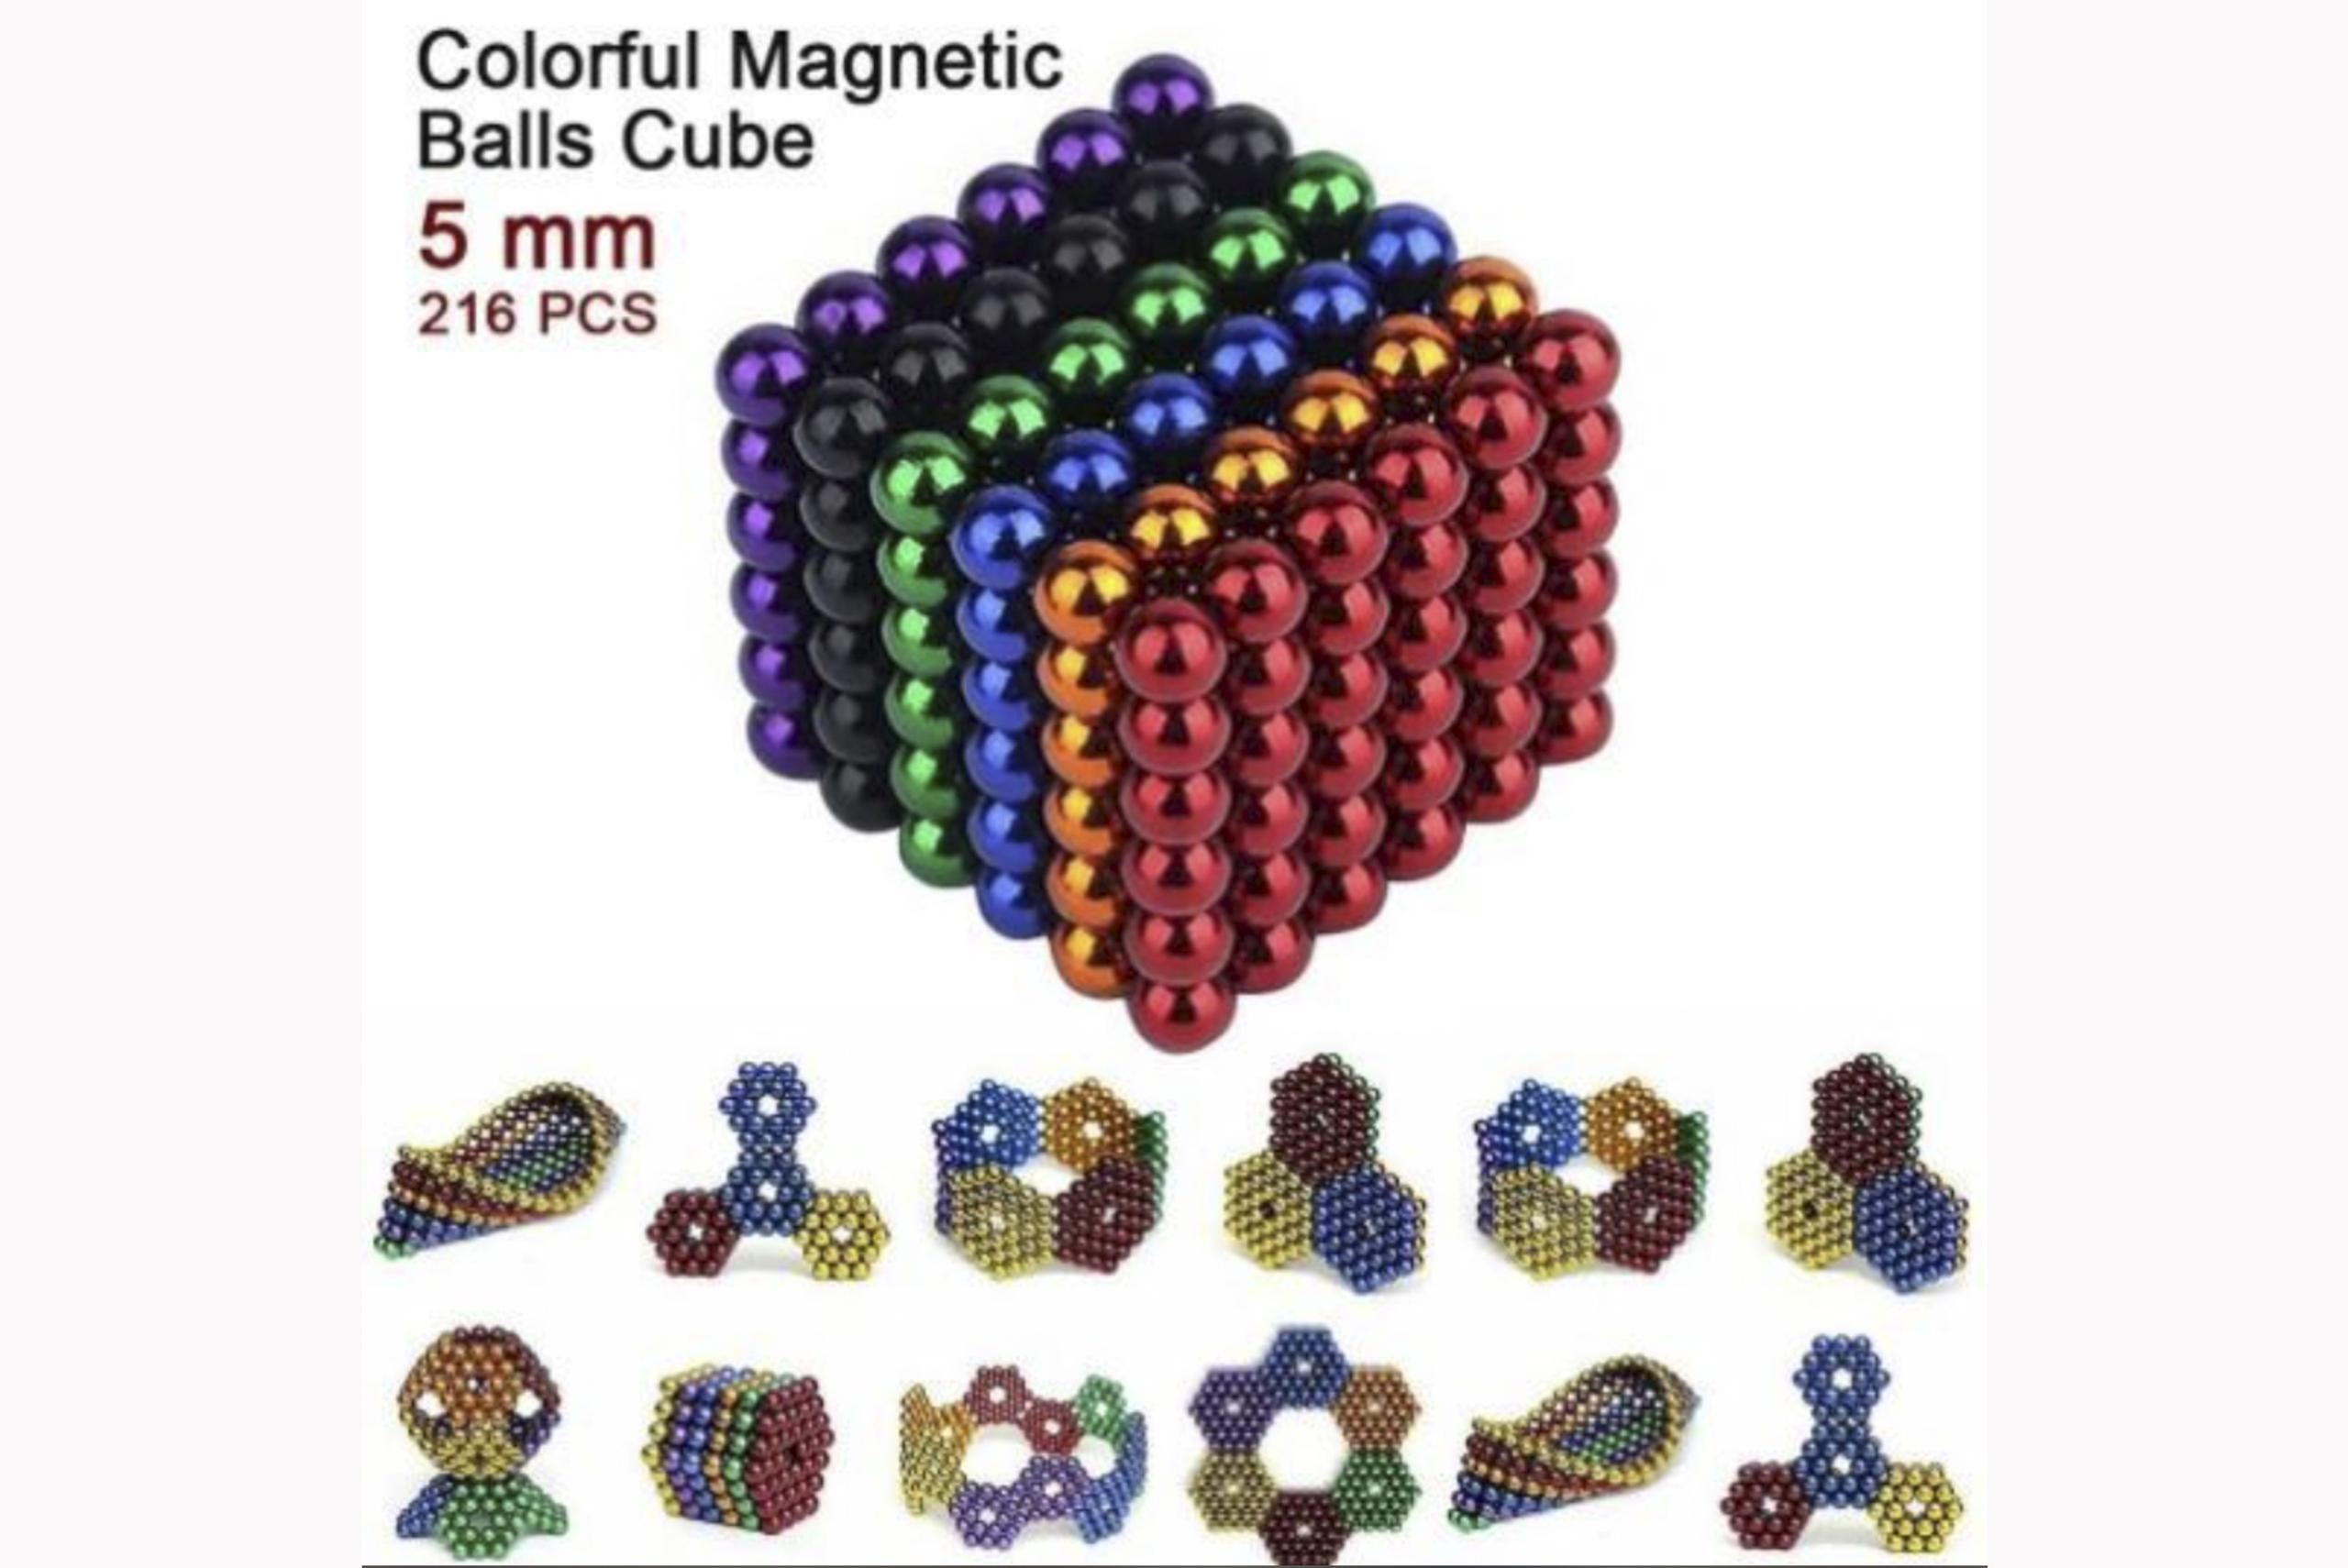 El Relax 5mm Science Kit contenía 216 pequeñas bolas magnéticas multicolores, con lo que la CPSC llamó un "fuerte flujo magnético", que representan un riesgo a la salud de ser tragadas.